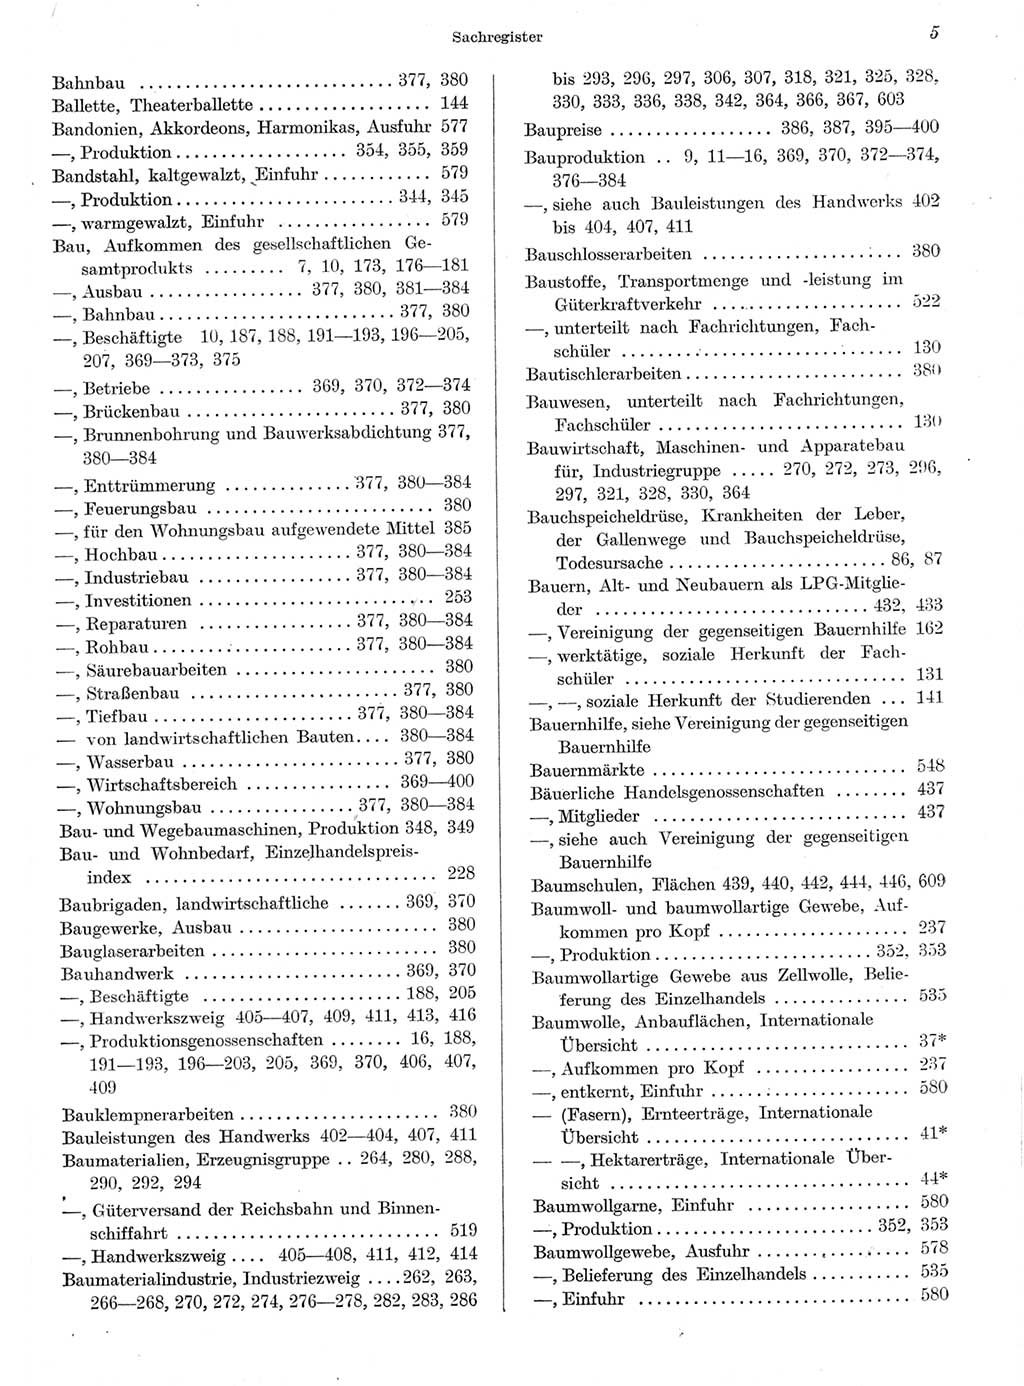 Statistisches Jahrbuch der Deutschen Demokratischen Republik (DDR) 1959, Seite 5 (Stat. Jb. DDR 1959, S. 5)